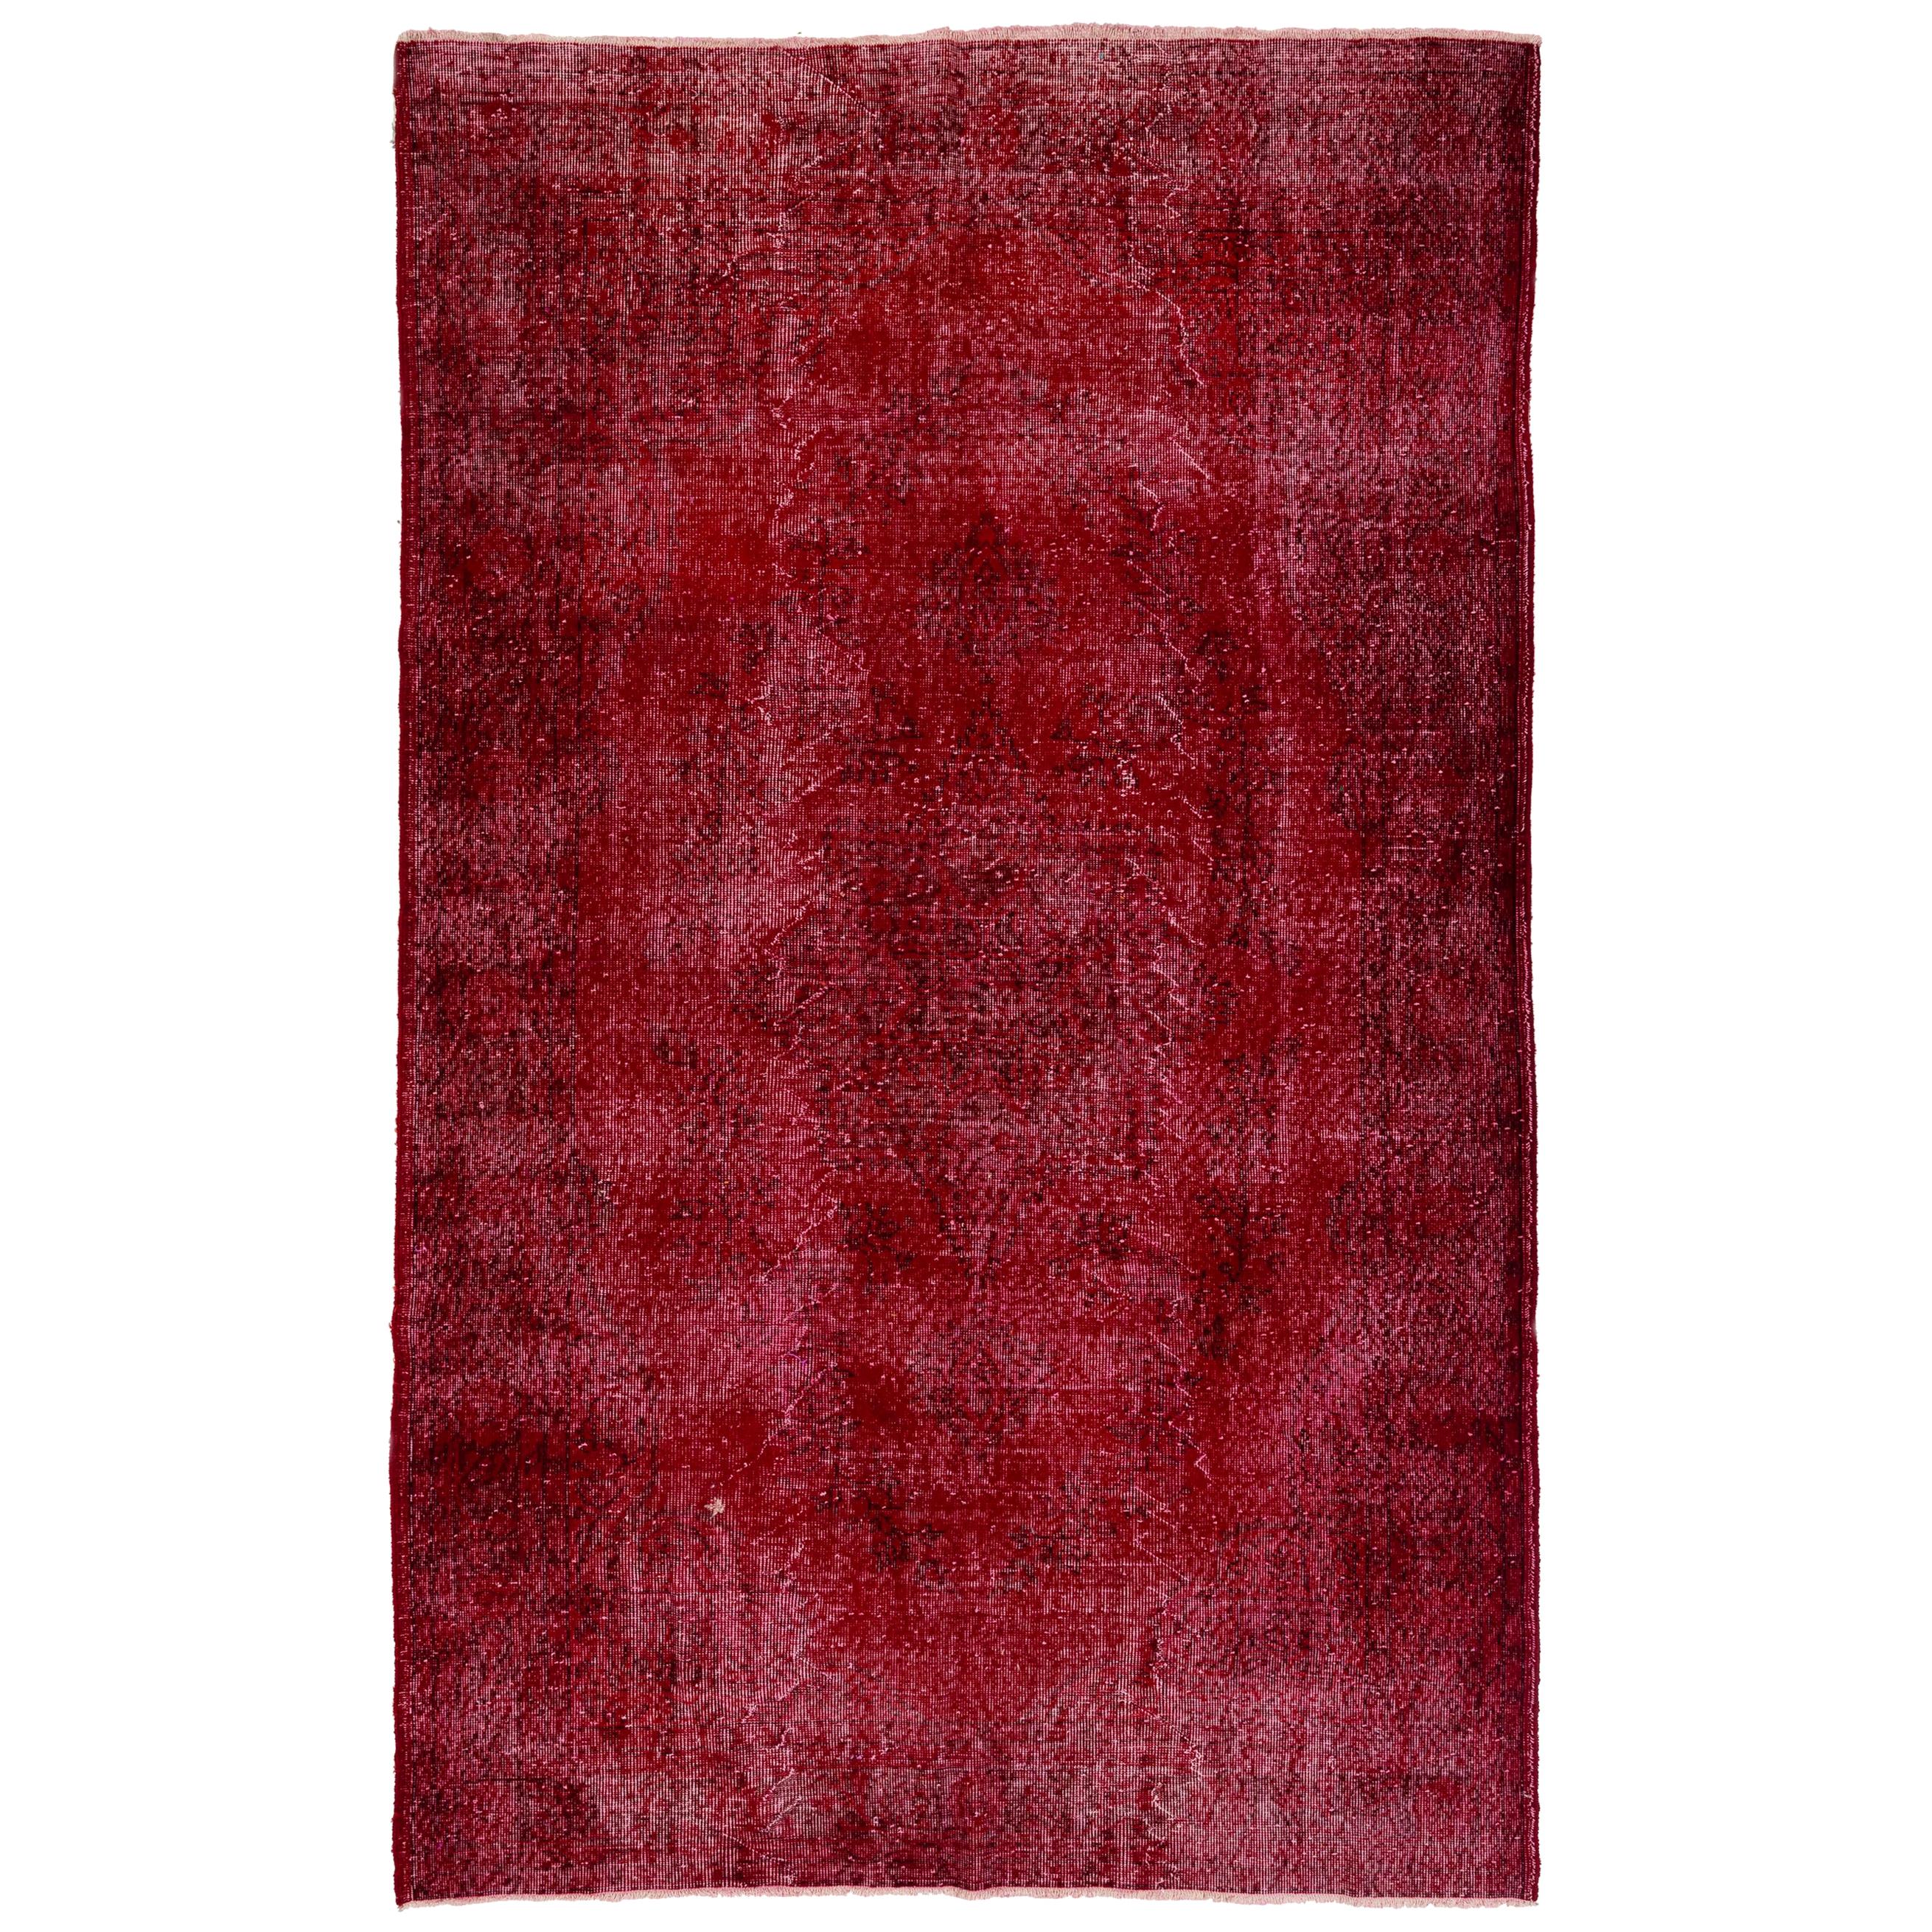 6,2 x 10 Fuß handgefertigter türkischer Vintage-Teppich in roter Farbe für moderne Inneneinrichtungen